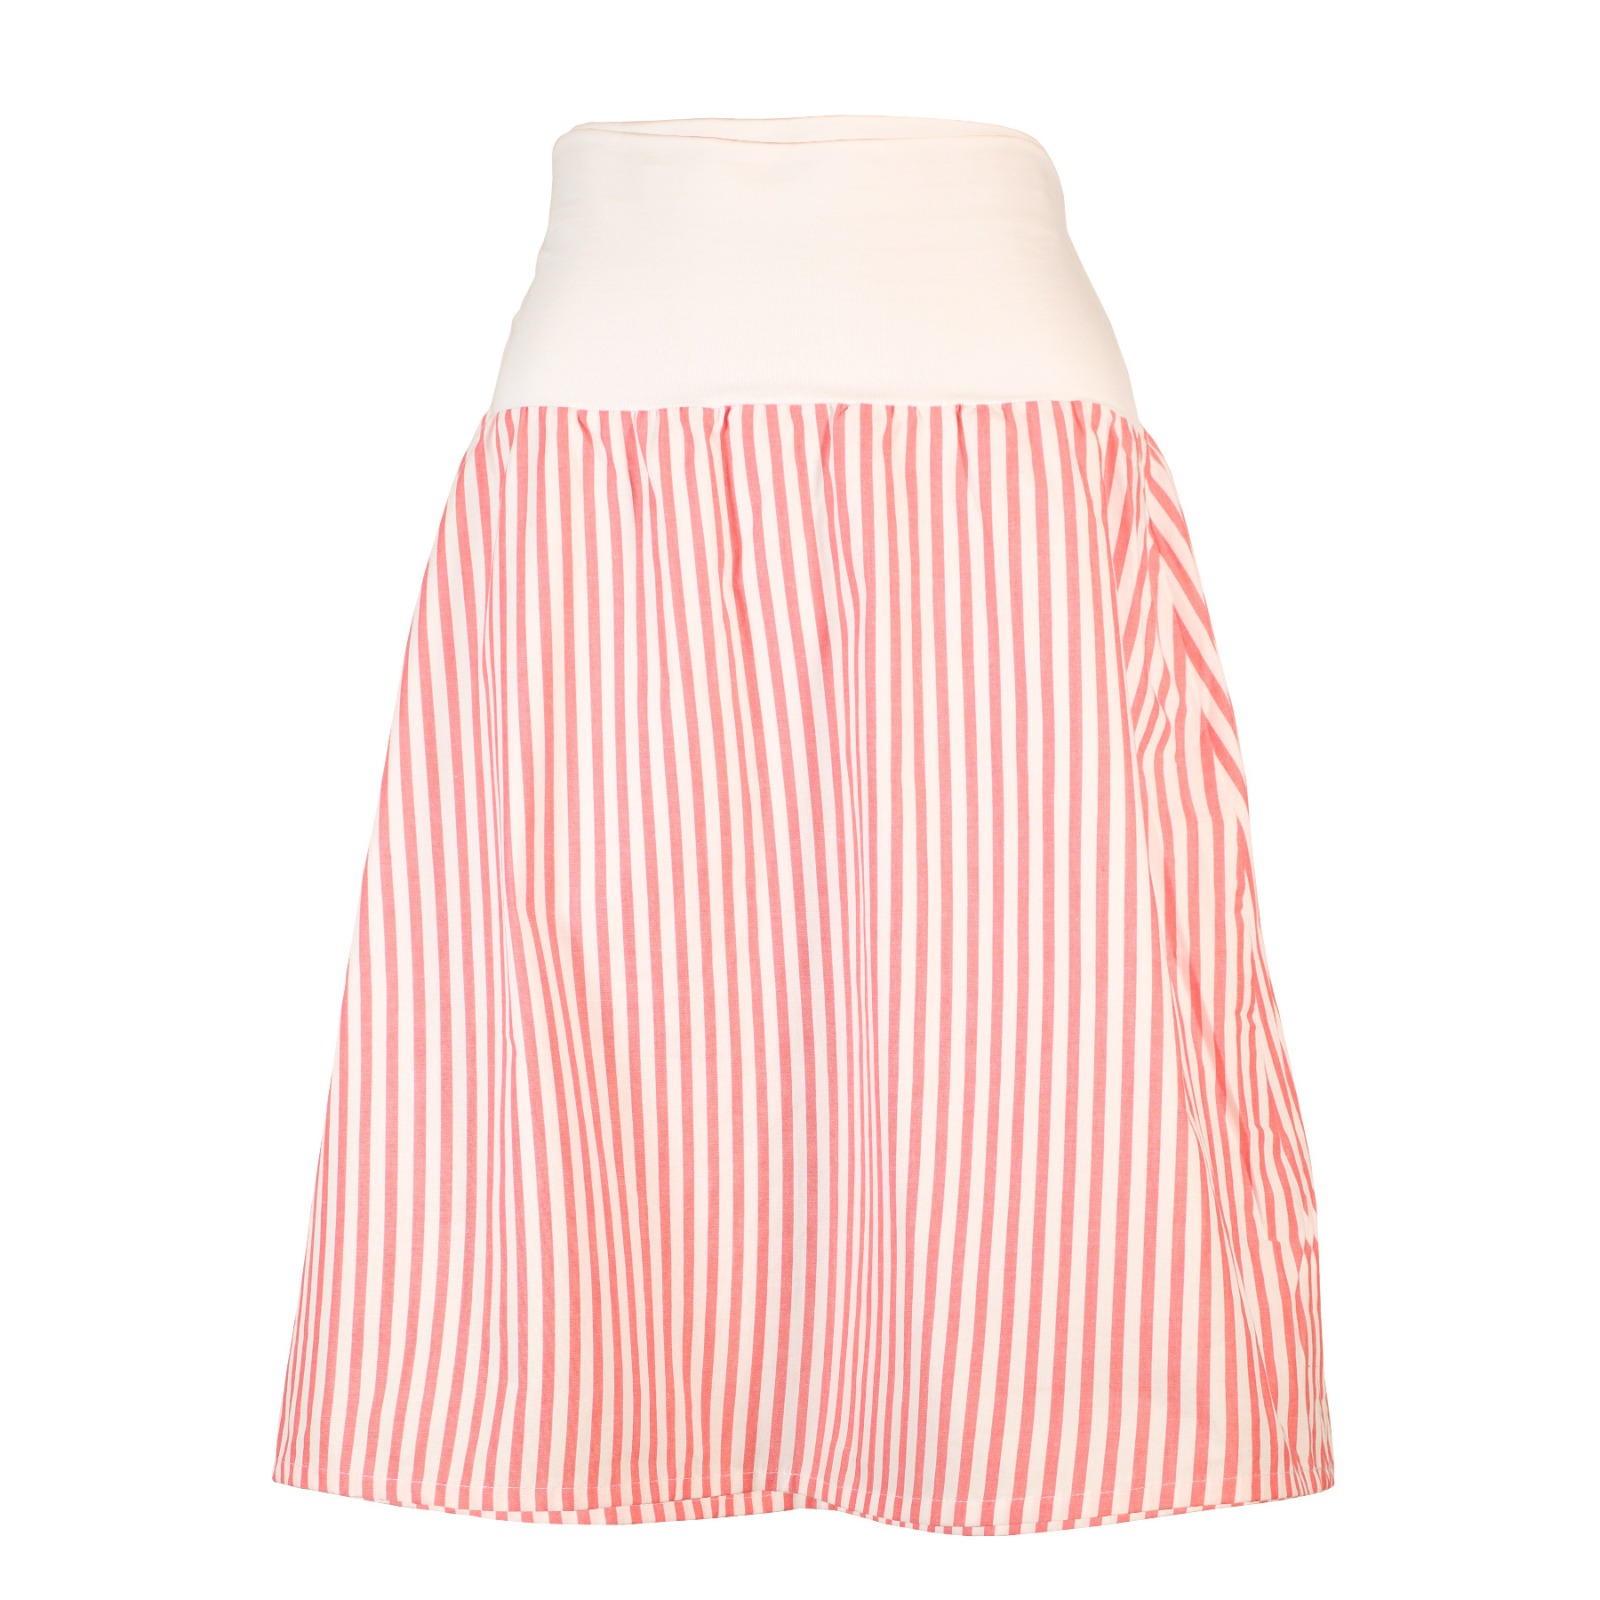 Organic skirt Freudian summer stripes red / white 2